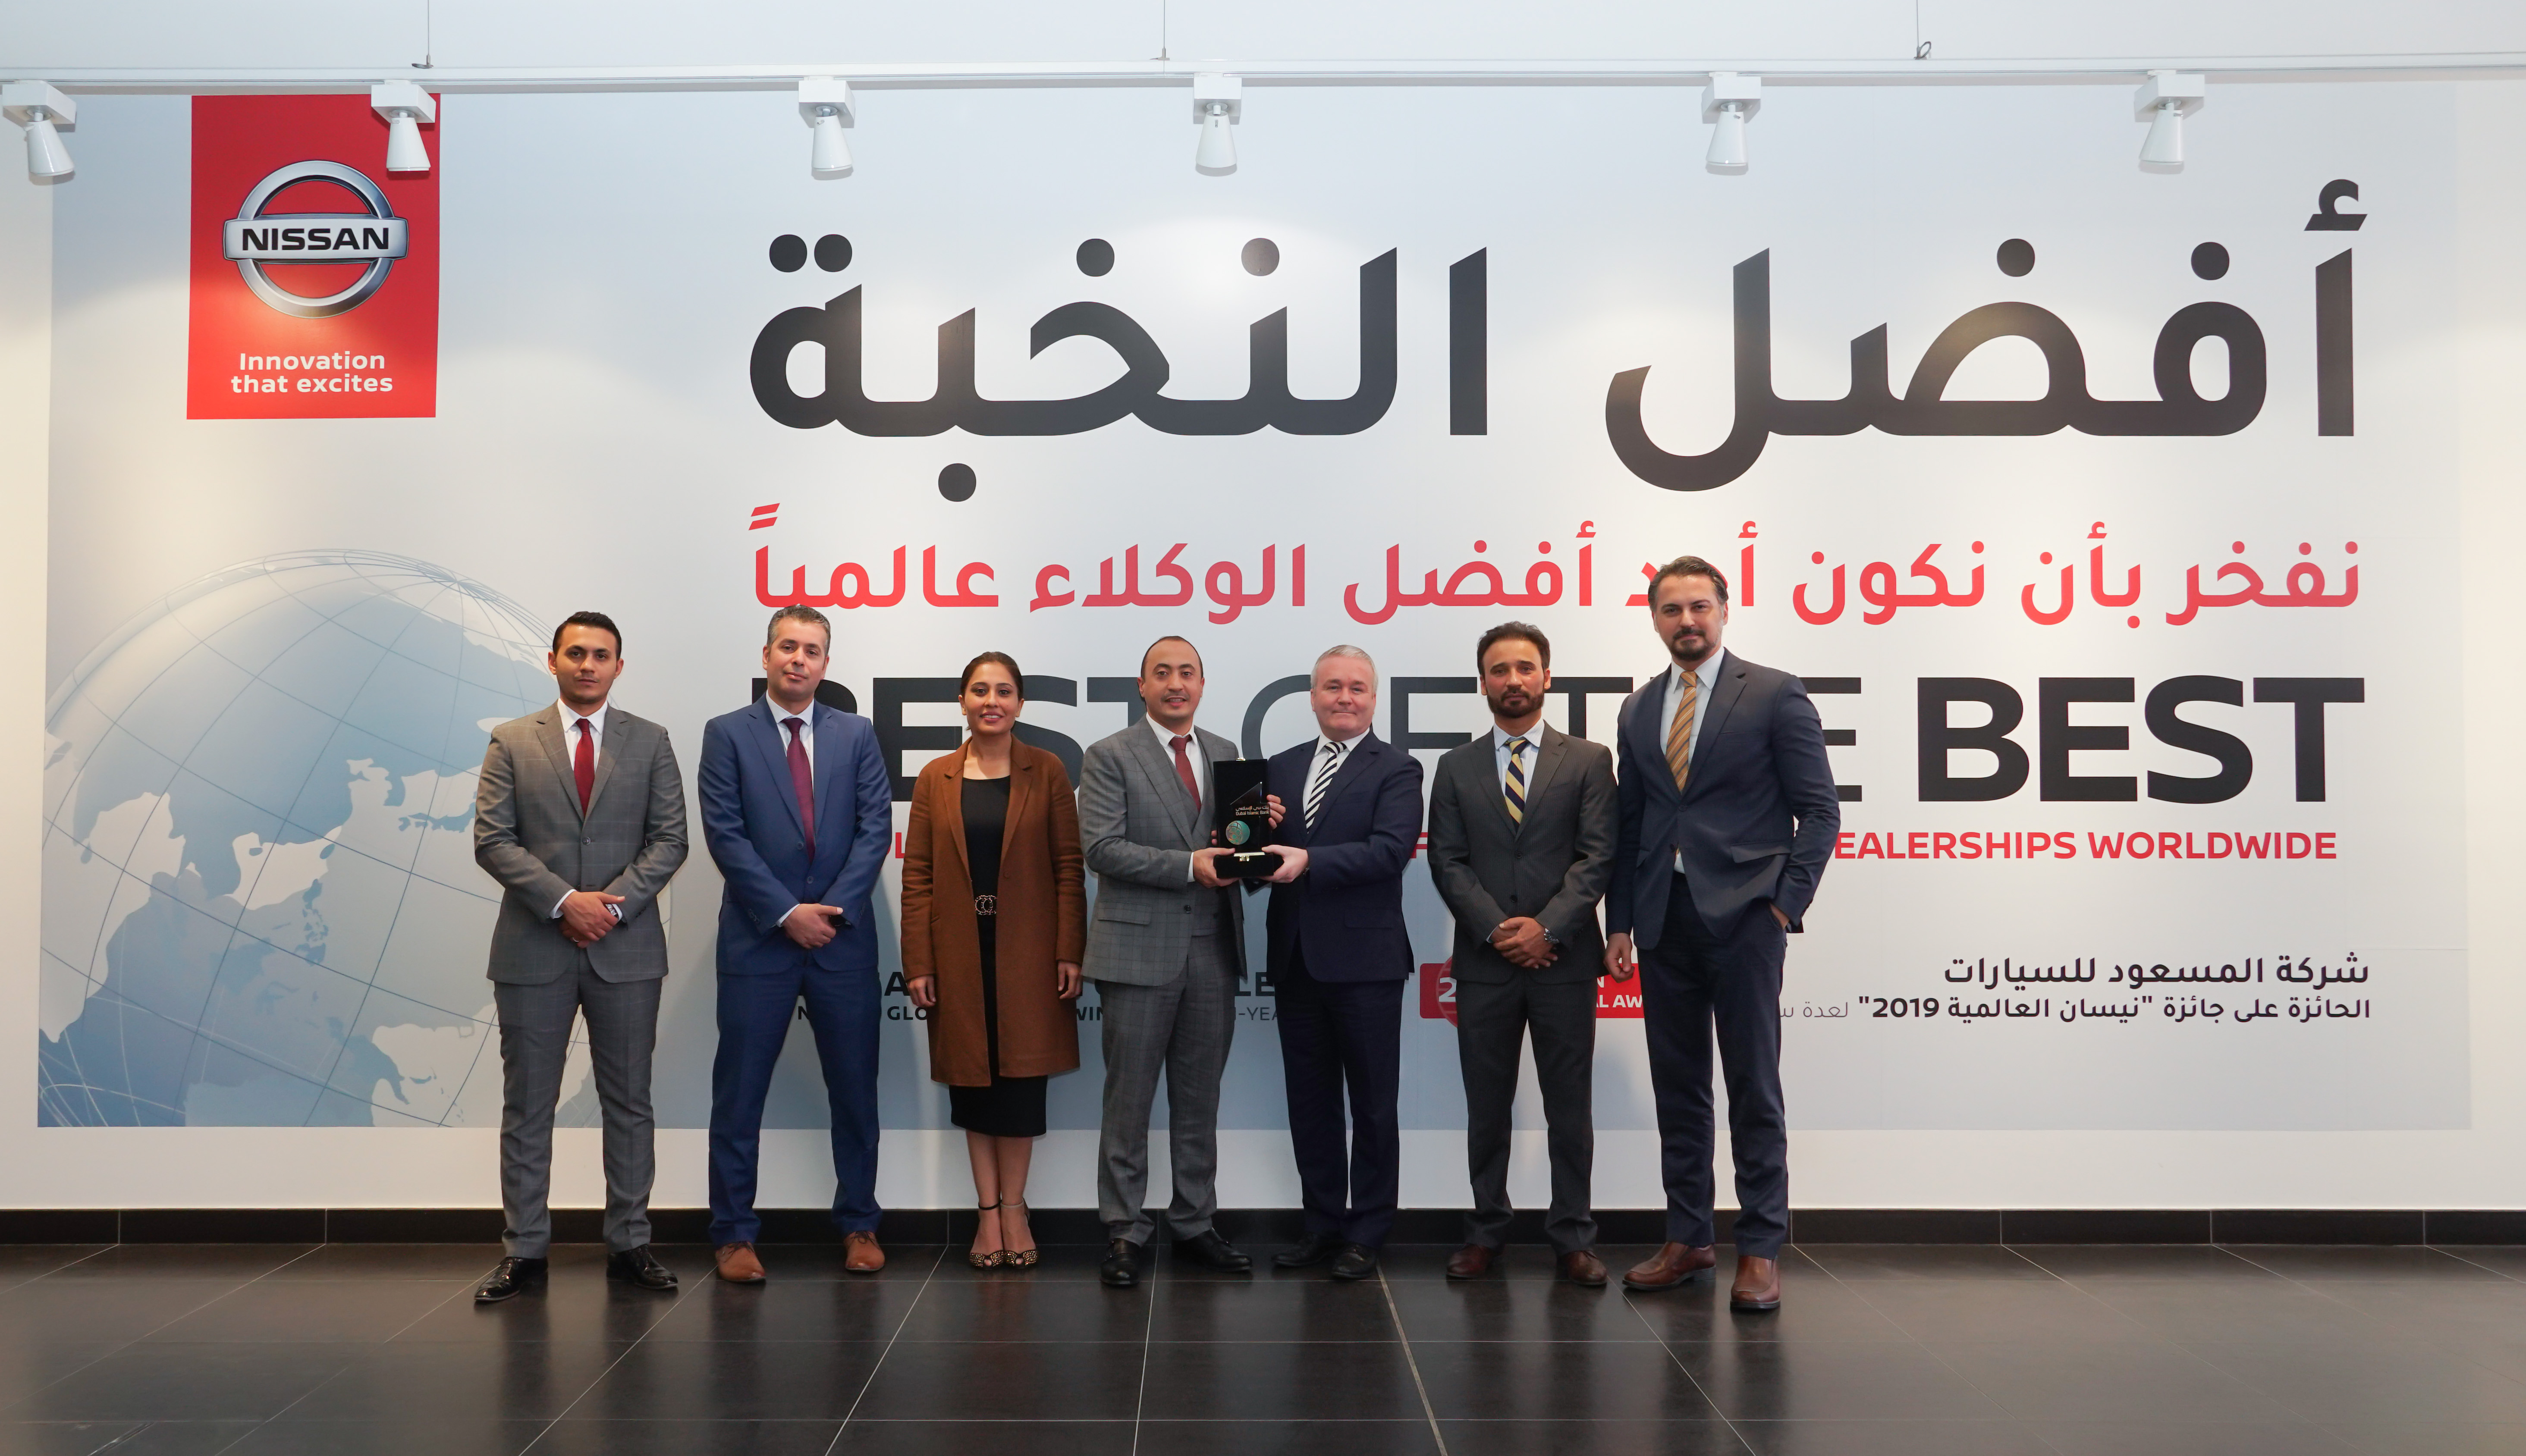 المسعود للسيارات أول وكيل سيارات في دولة الإمارات يتم تكريمه من قبل بنك دبي الإسلامي